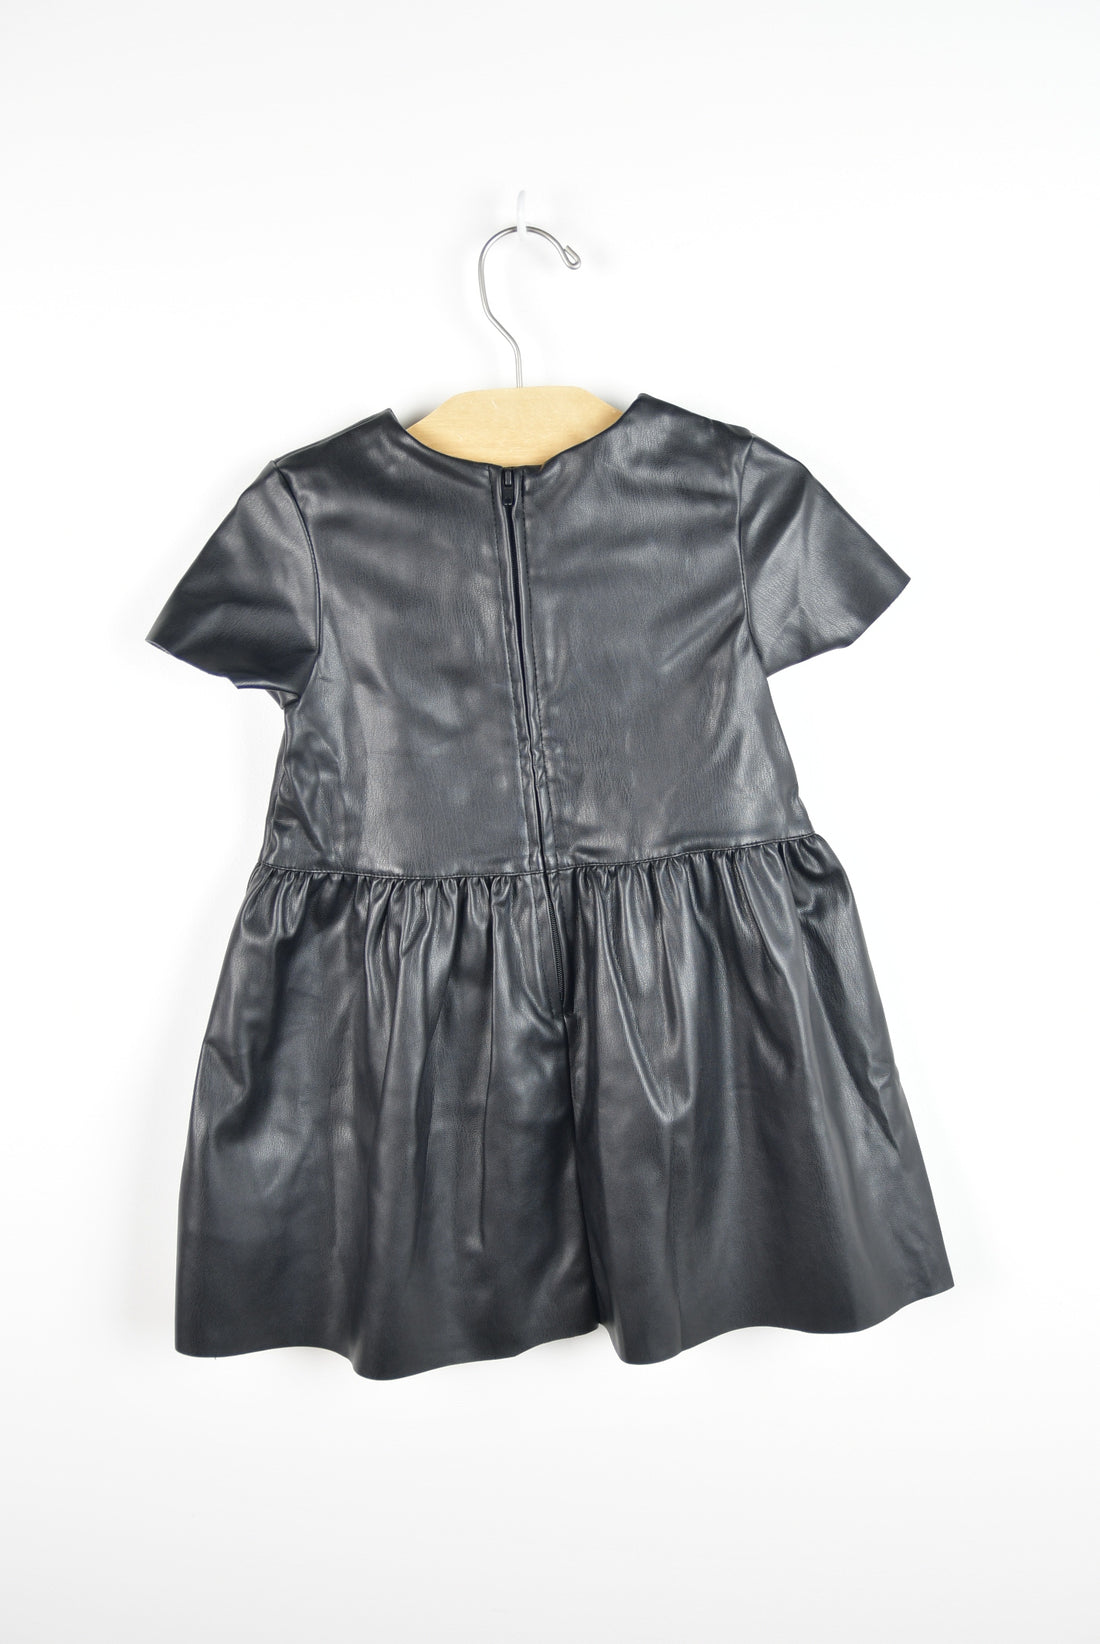 Black Pleather Dress -  2-3T